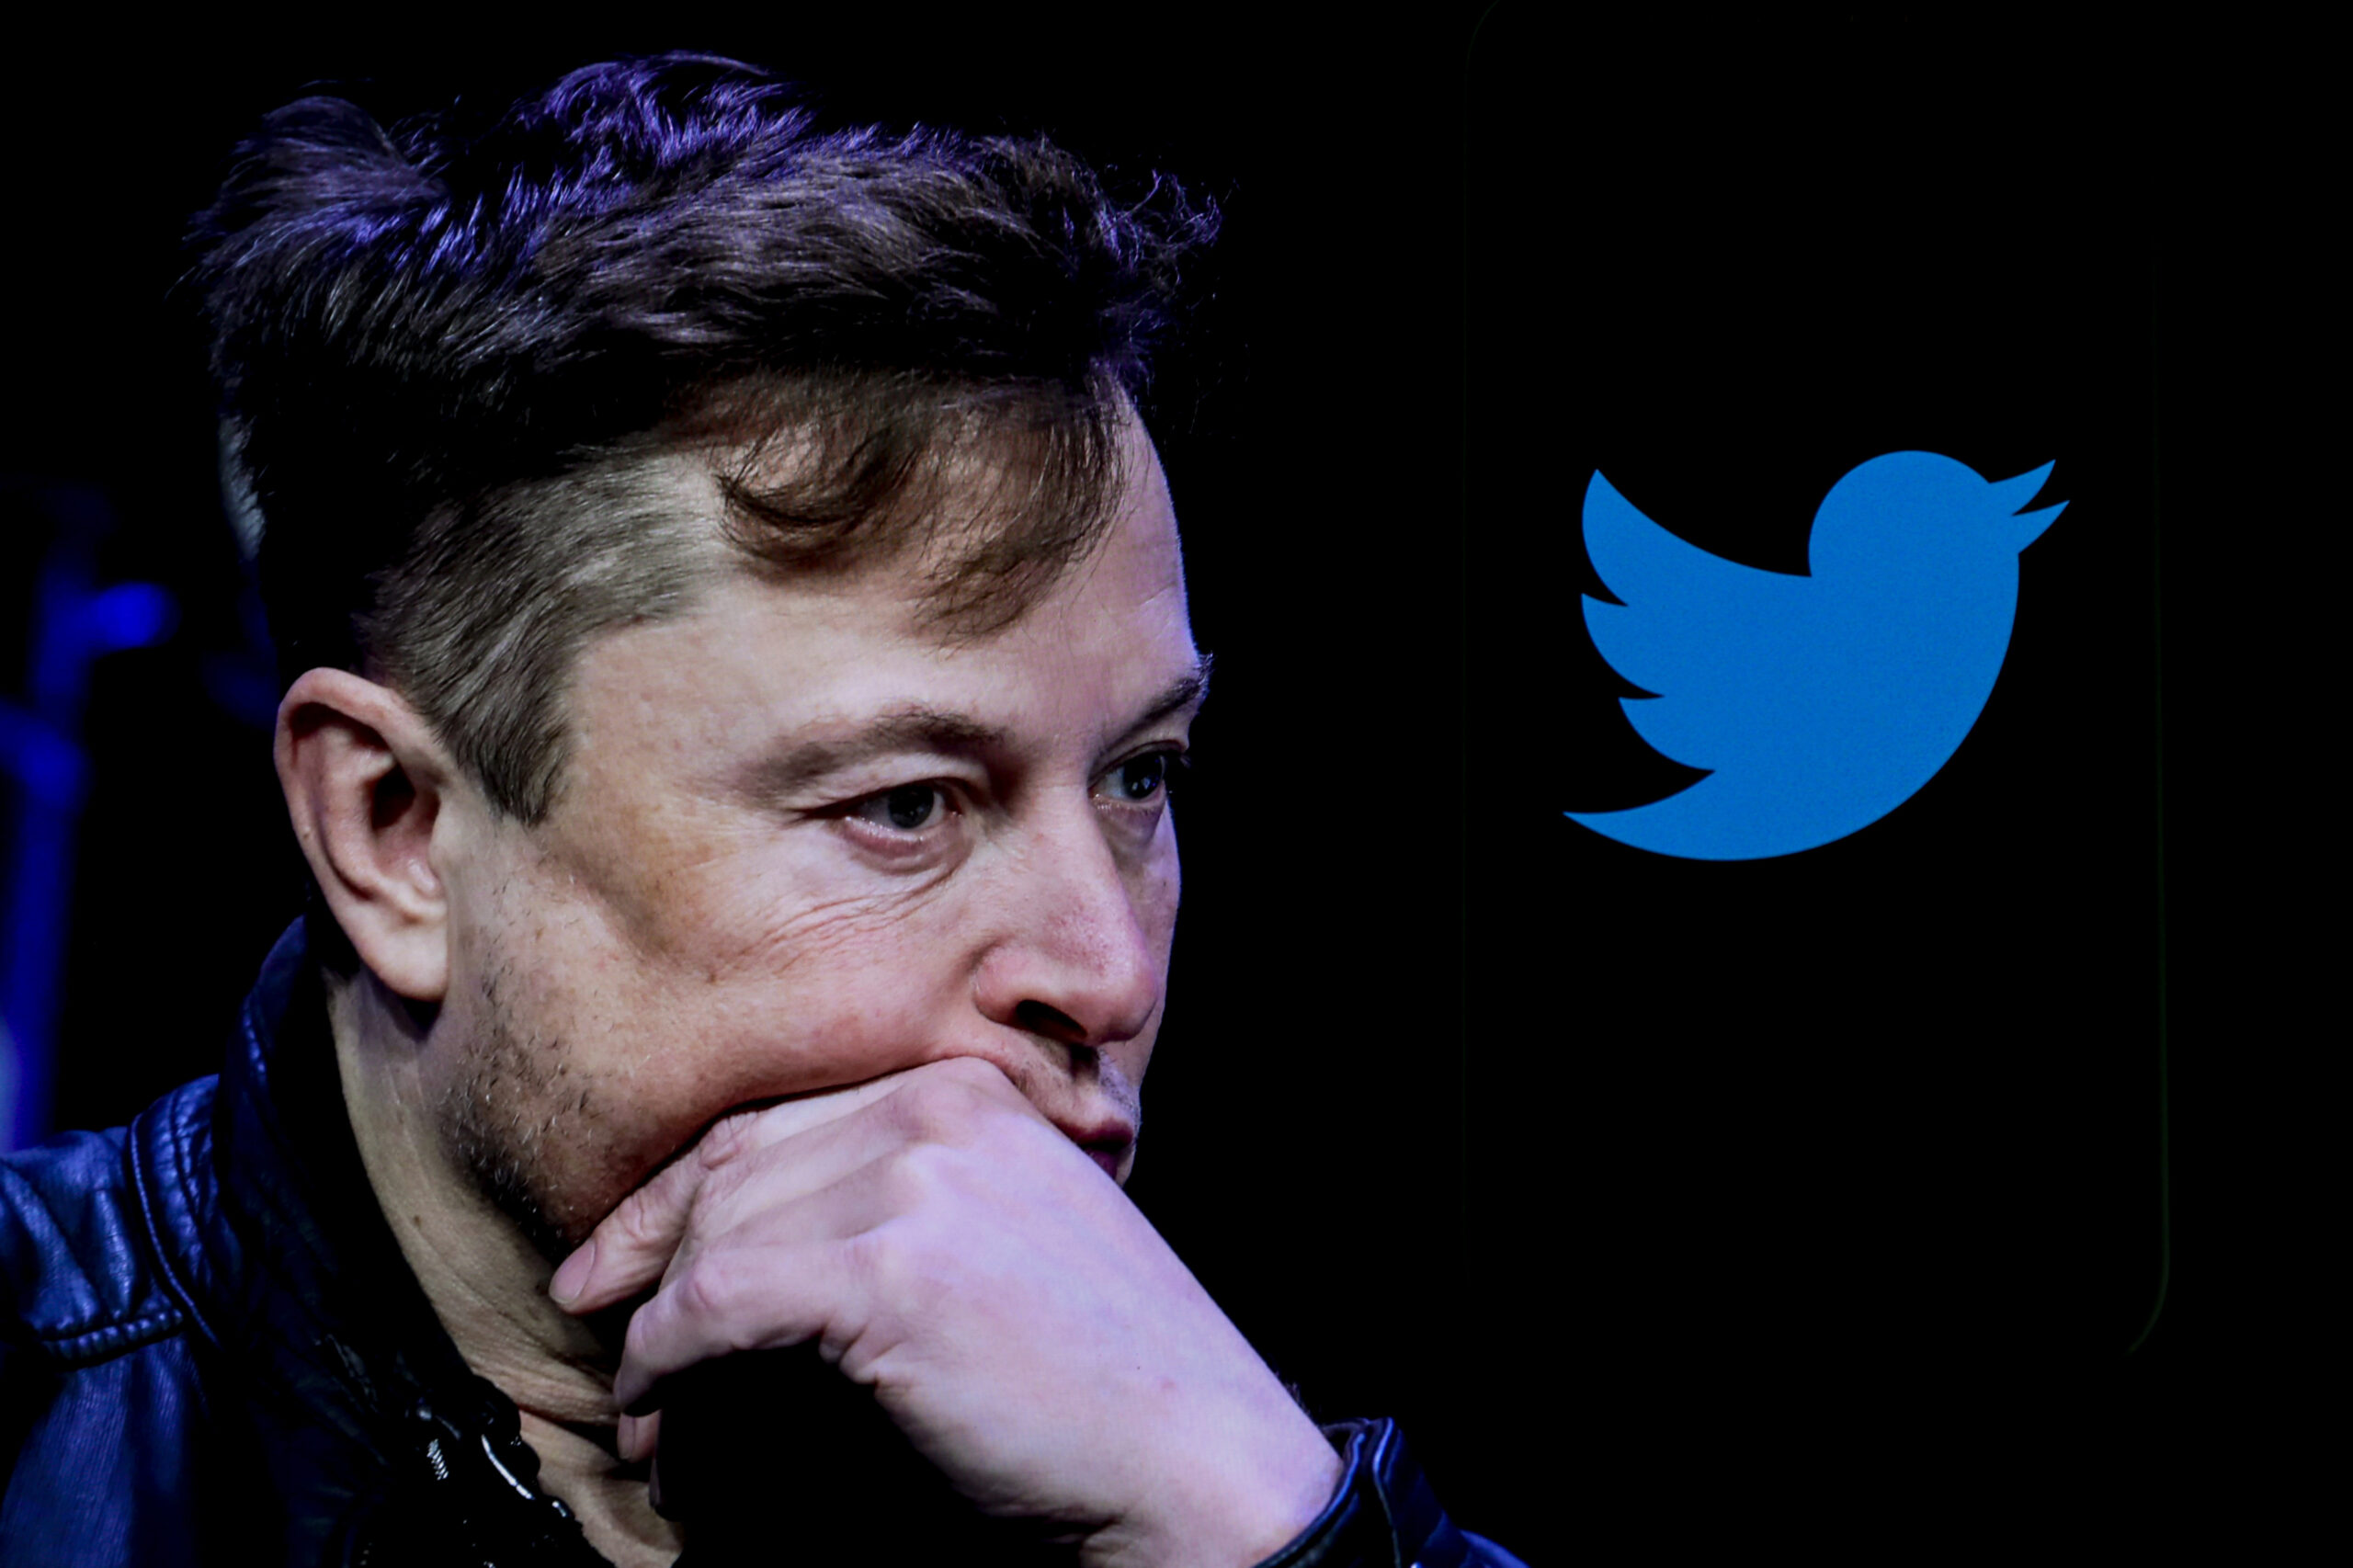 Các luật sư của Elon Musk yêu cầu thẩm phán hủy bỏ phiên tòa xét xử trên Twitter